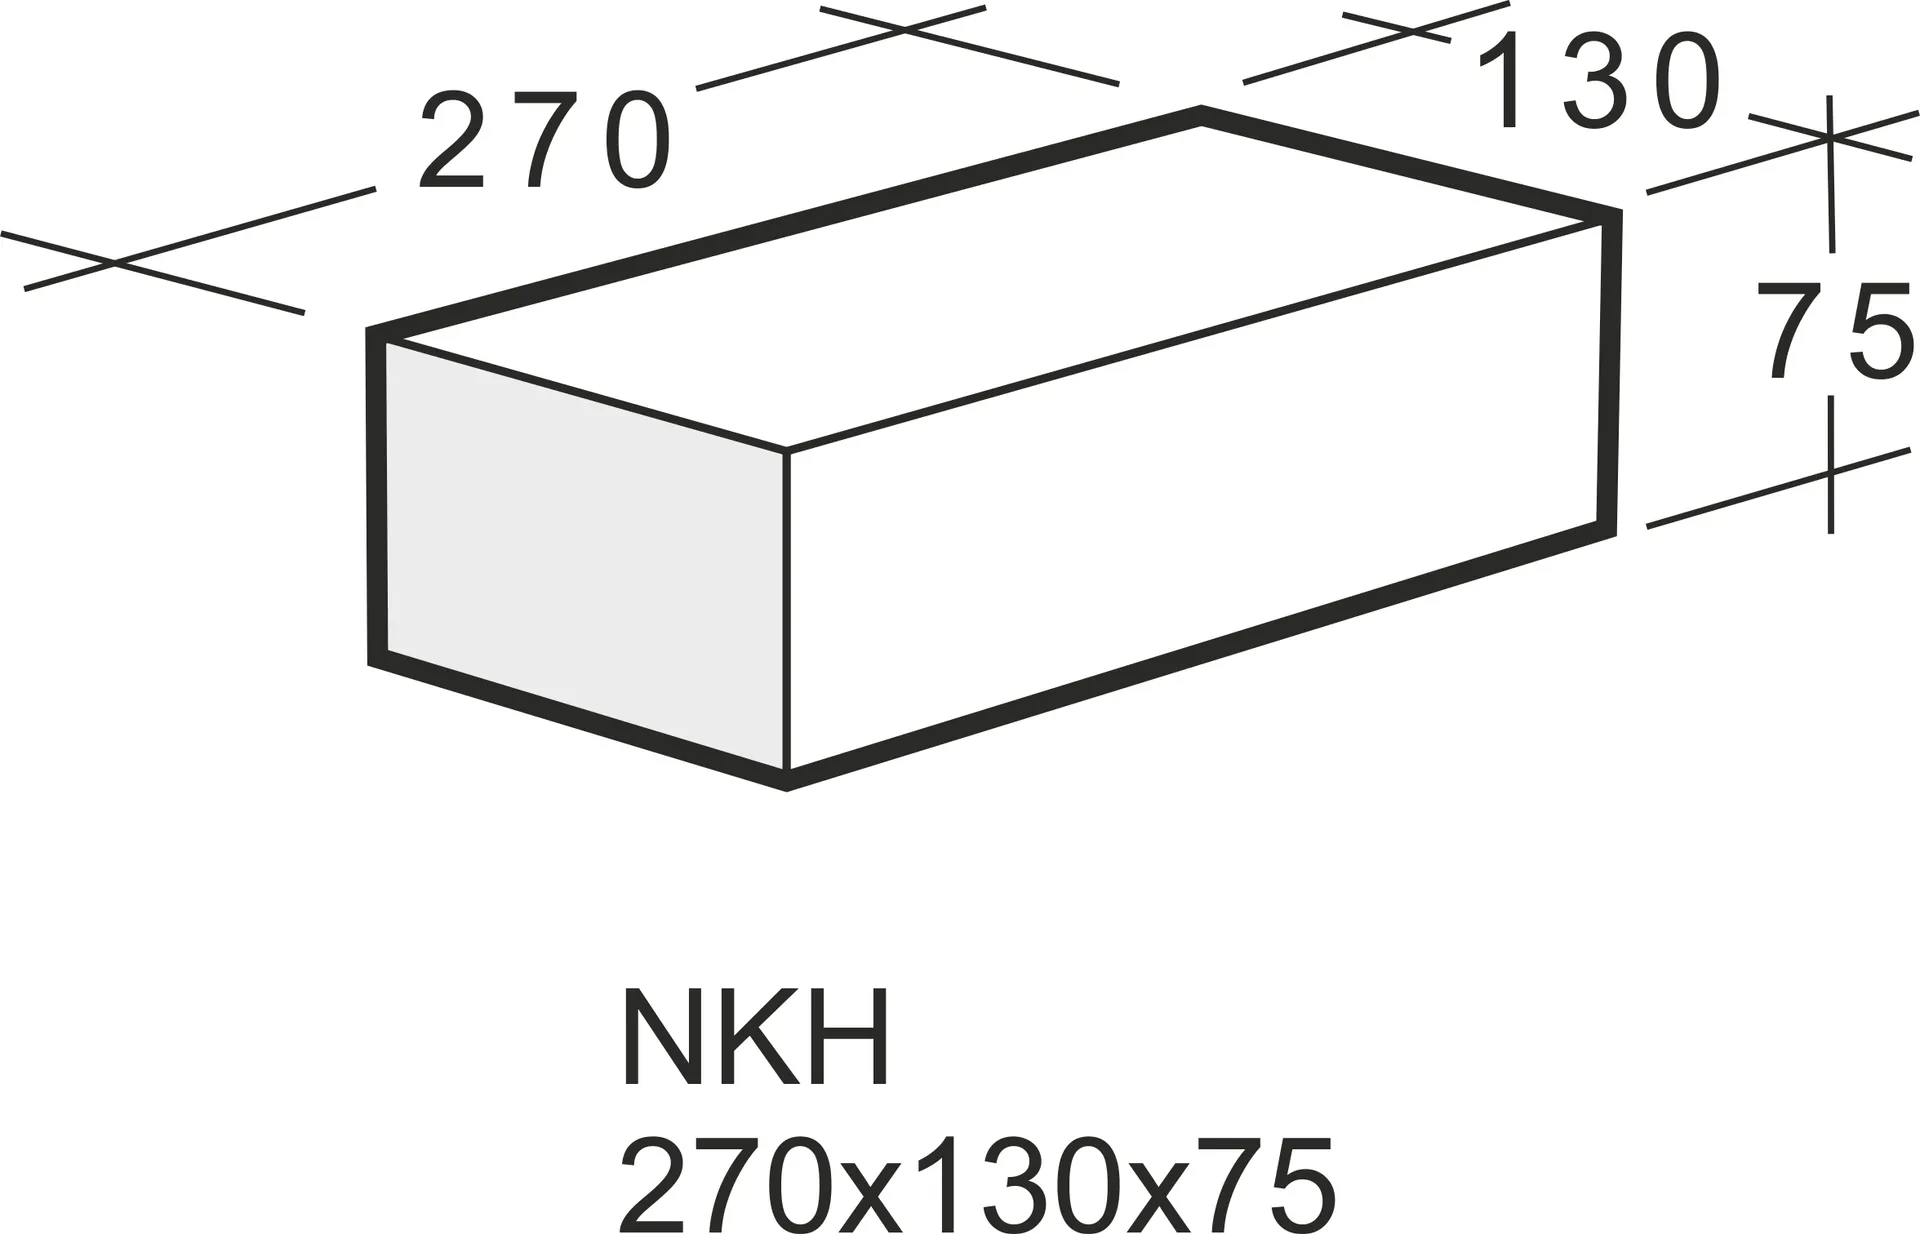 Kahi NKH Väliseinätiili 270x130x75 - 2